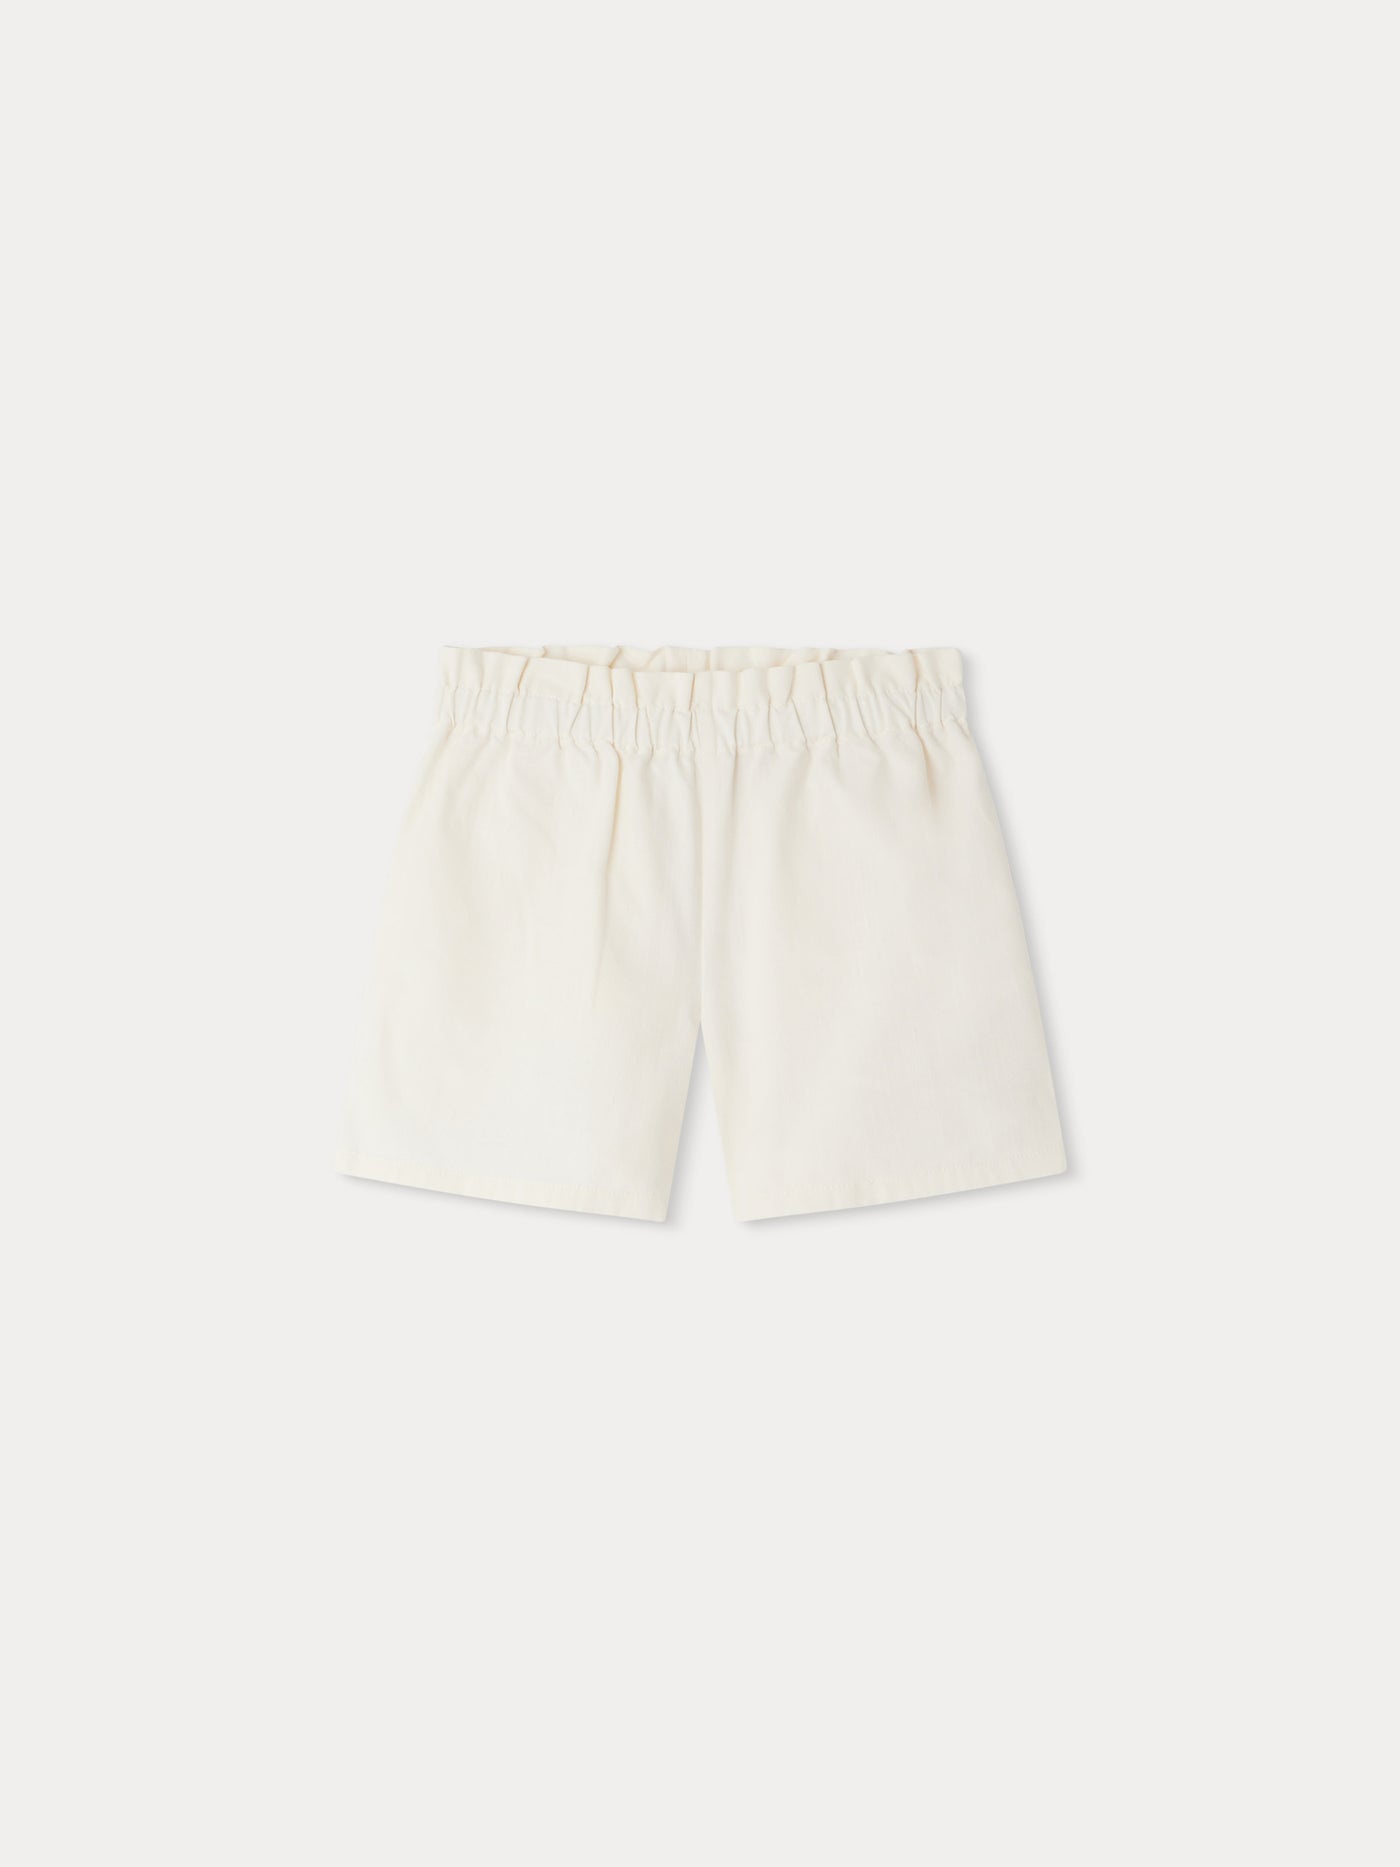 Milly Shorts milk white • Bonpoint